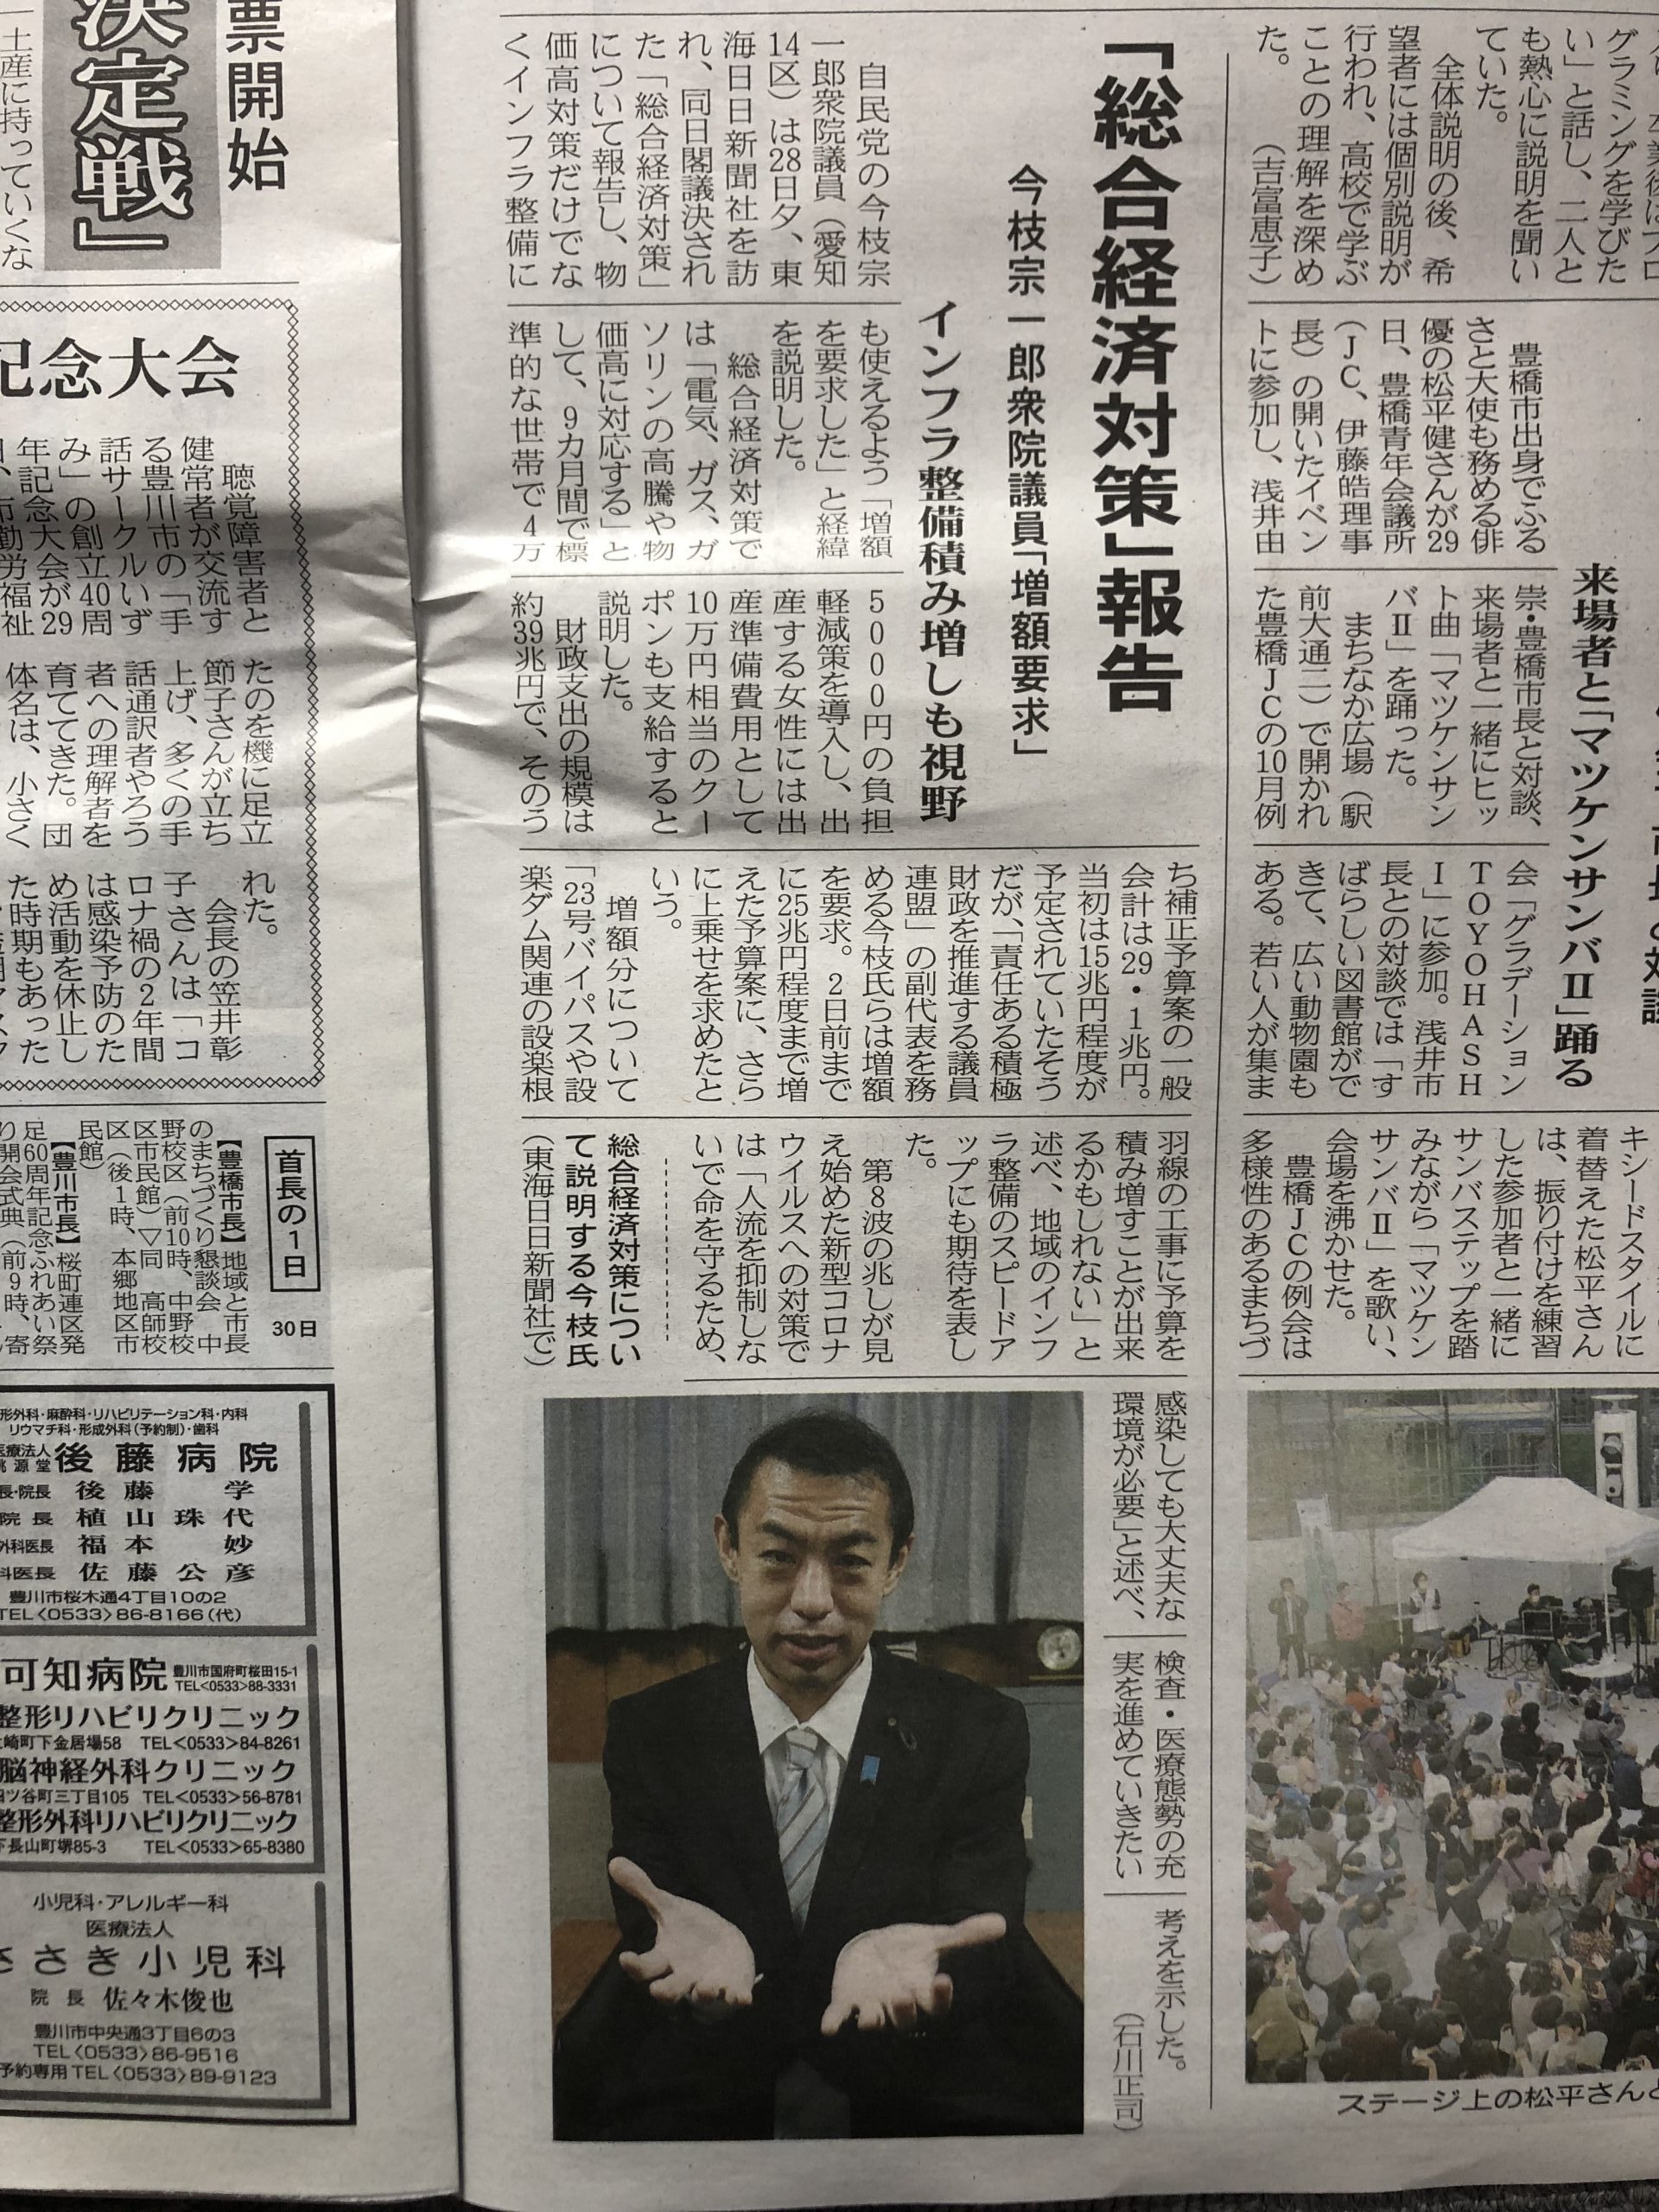 昨日の東愛知新聞に続いて、今朝は東日新聞でも取り上げて頂きました。